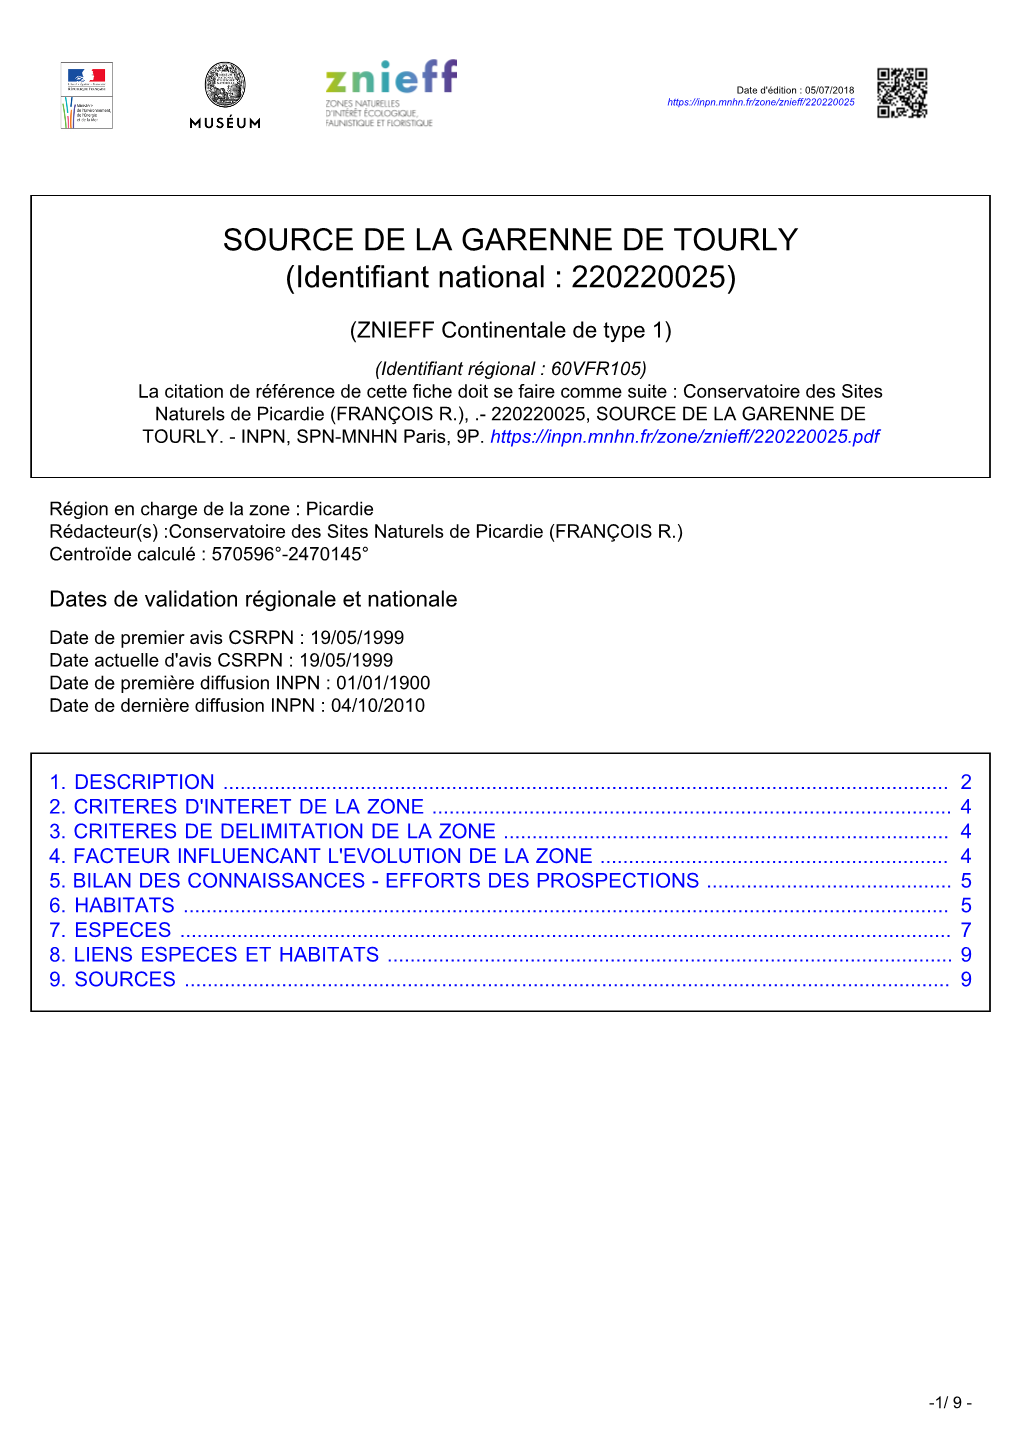 SOURCE DE LA GARENNE DE TOURLY (Identifiant National : 220220025)